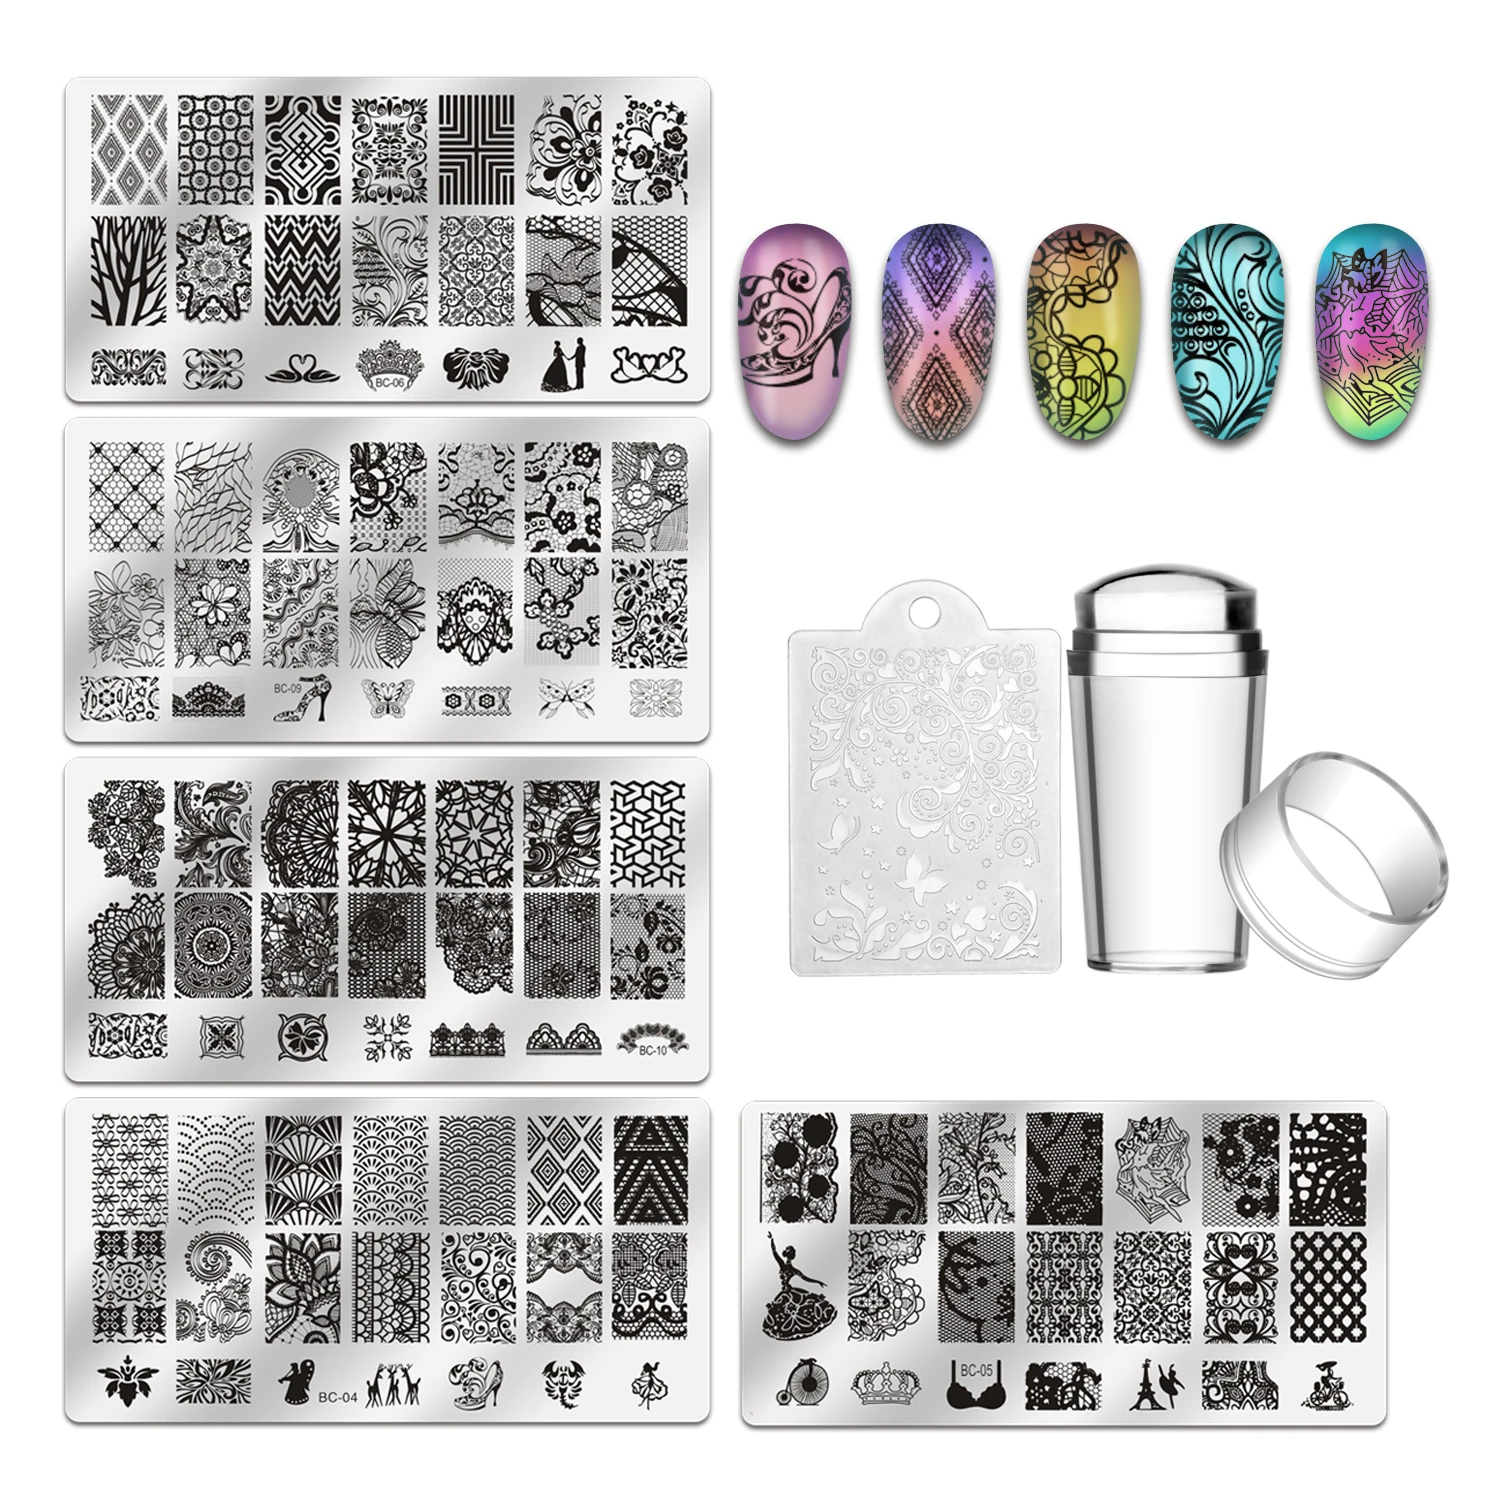 Biutee 5 шт. пластины для штамповки ногтей+ 1 штамп+ 1 скребок кружева цветок животный узор дизайн ногтей штамп штамповка шаблон изображения пластины